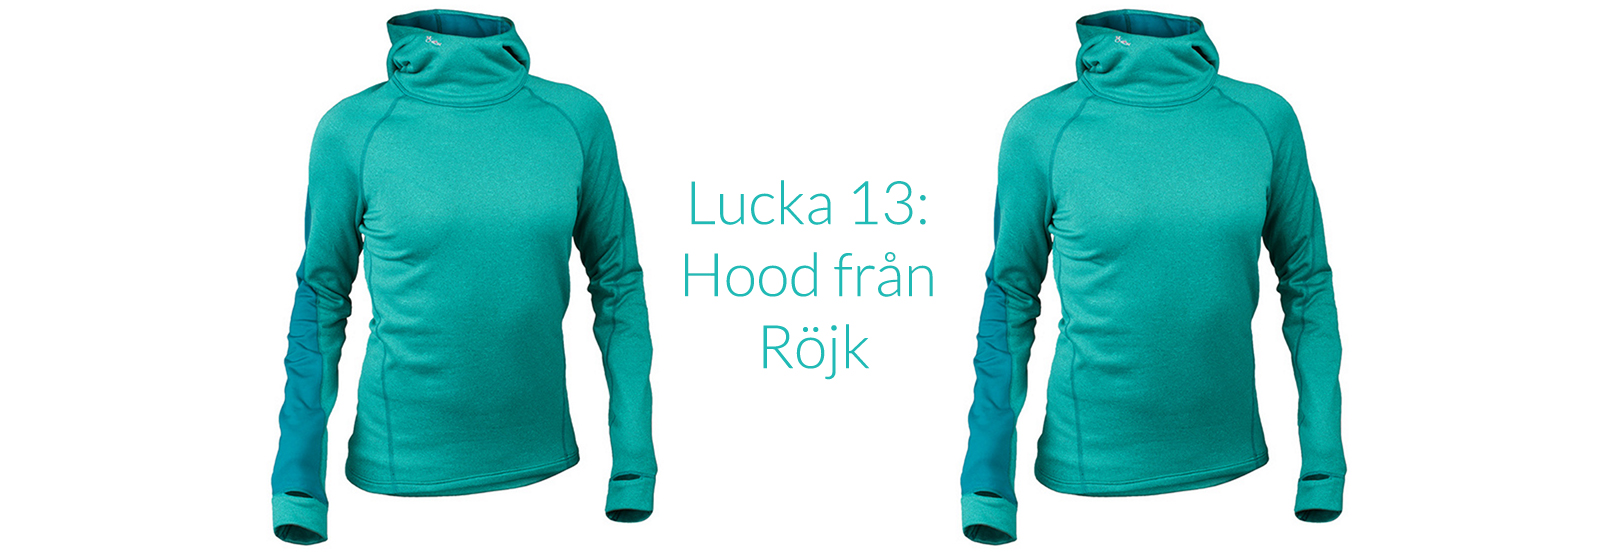 Lucka 13: Vinn hoodie från Röjk + vinnare i julkalendern